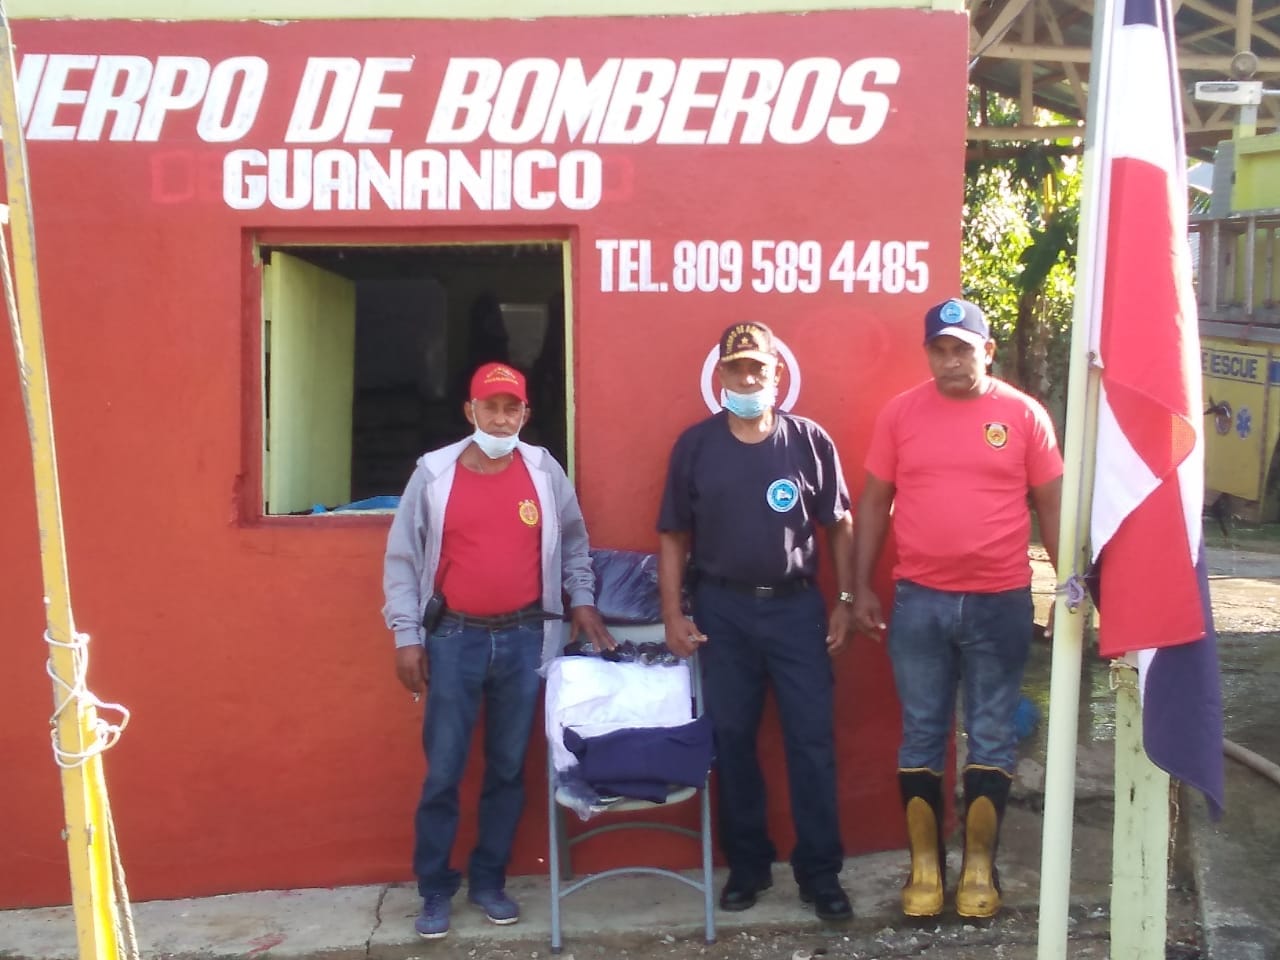 Cuerpo de bomberos del municipio de Guananico, recibió una donación de nuevos uniformes